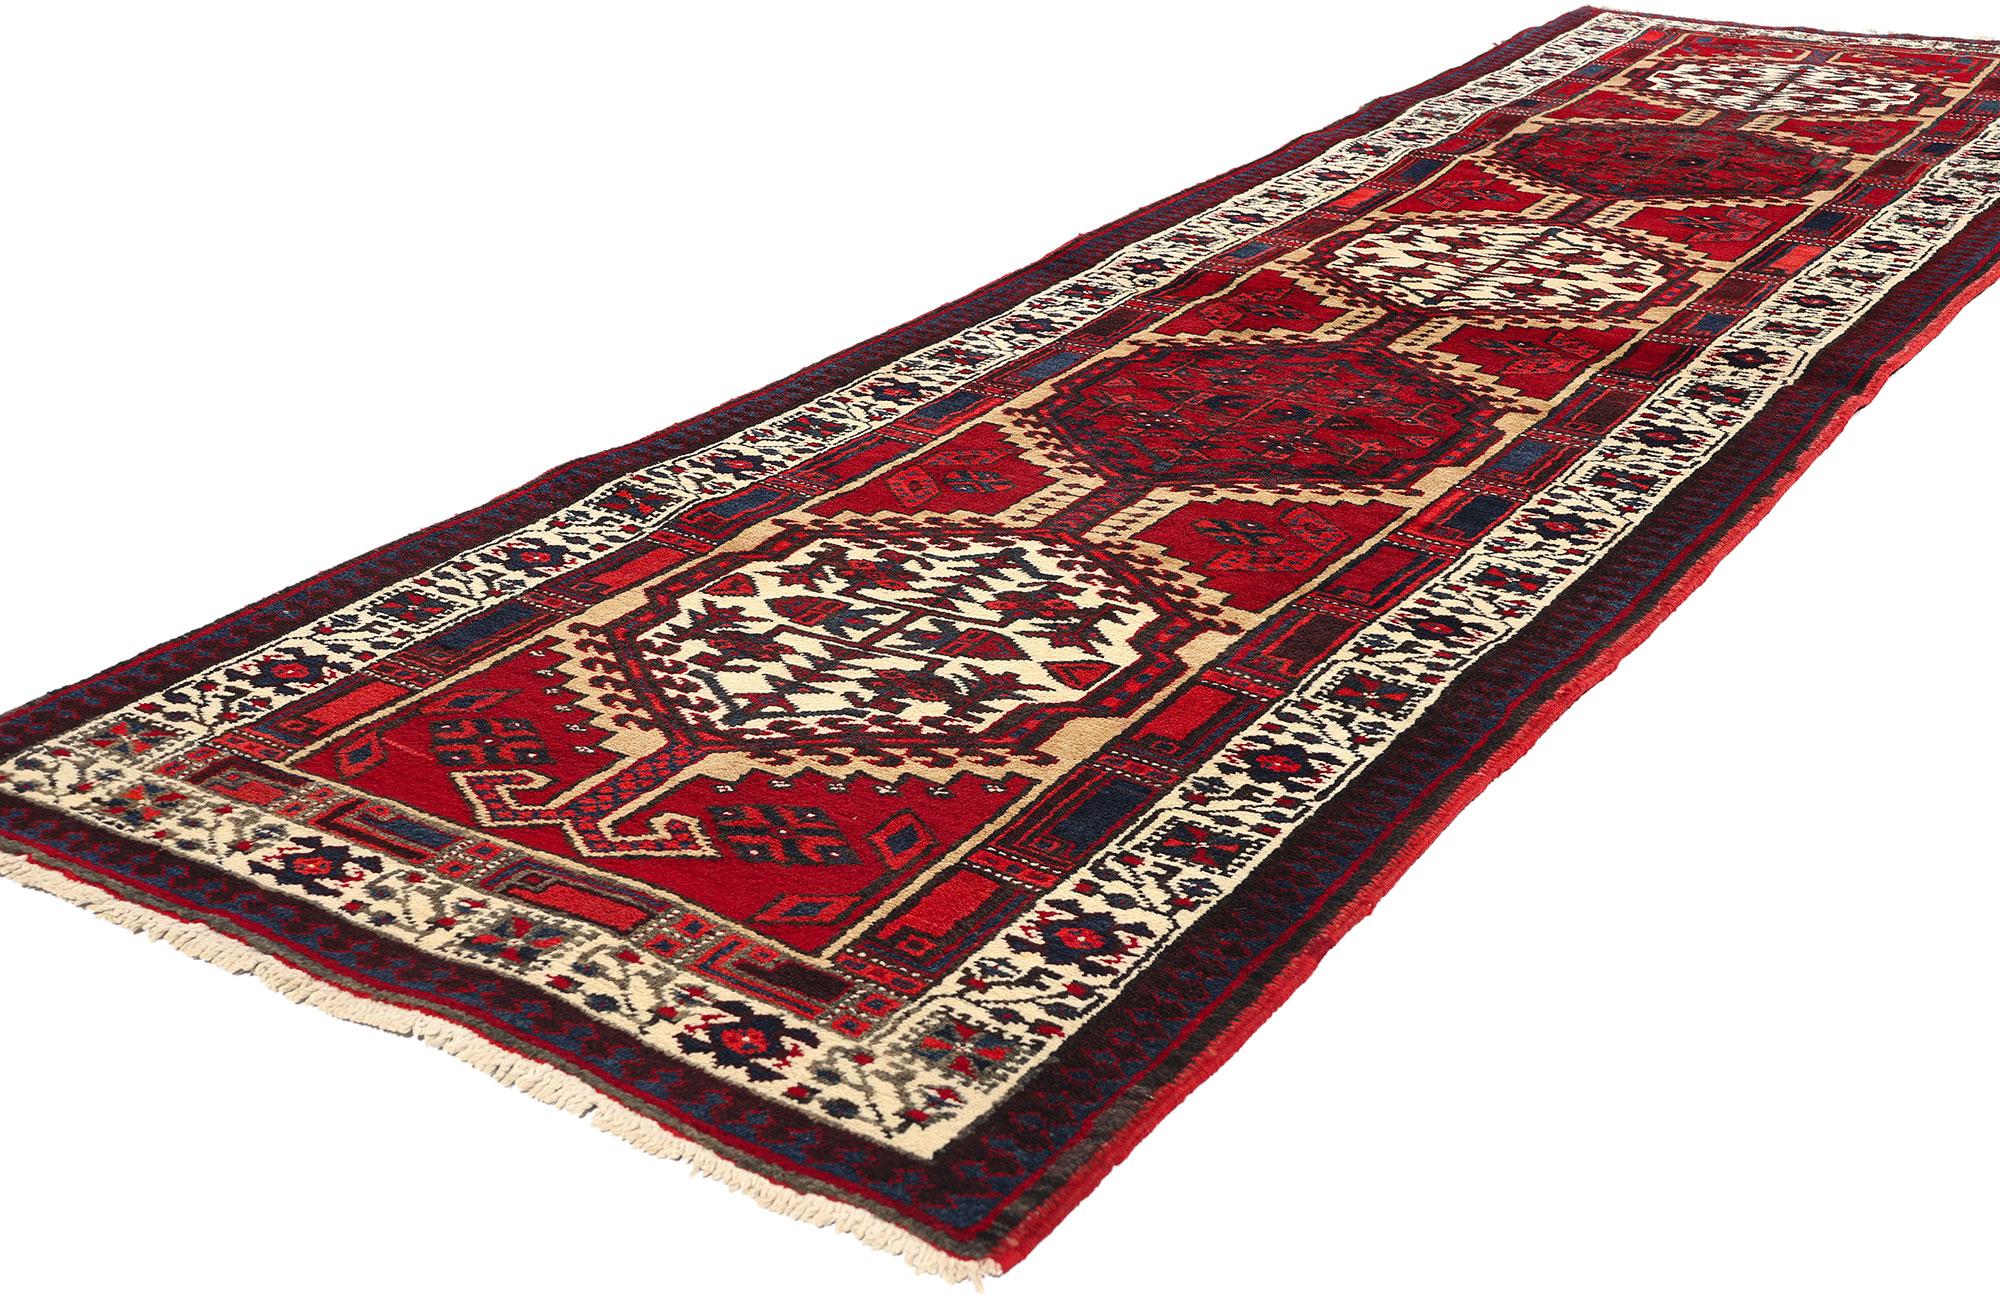 60245 Tapis persan vintage Heriz Runner, 03'02 x 11'03. Les chemins de tapis persans Heriz représentent une catégorie spécialisée dans le domaine des tapis Heriz. Ils sont formés dans un format long et étroit spécialement conçu pour embellir les